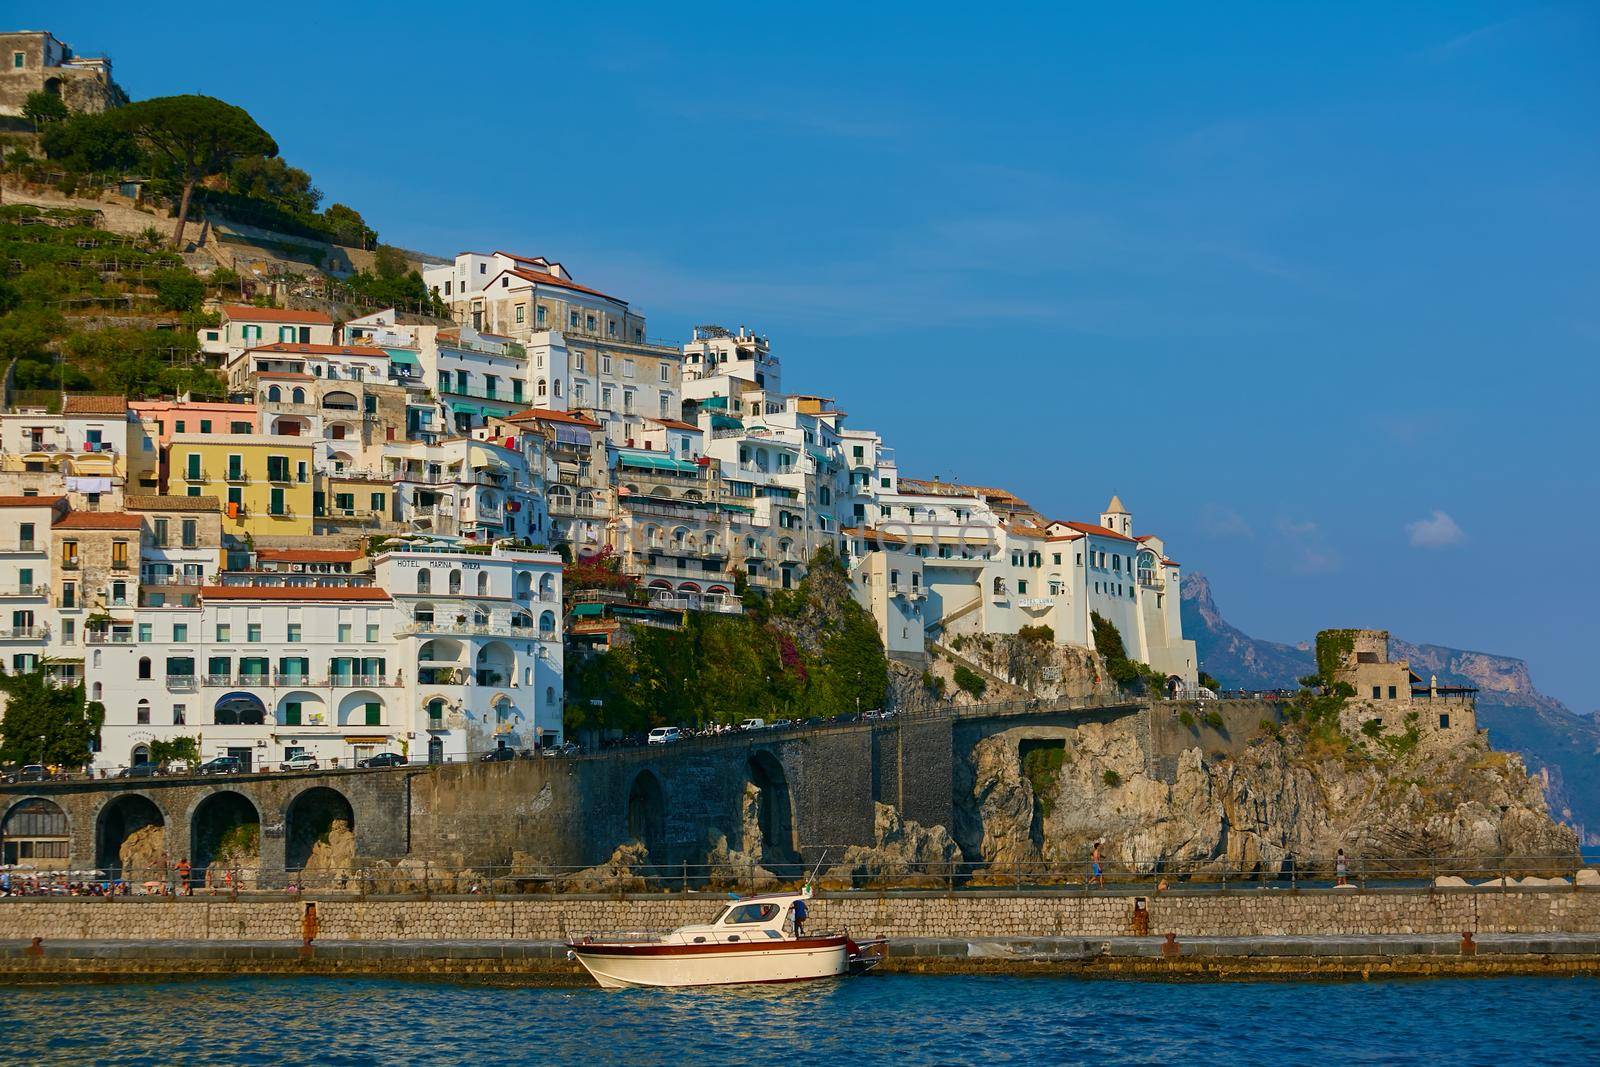 Amalfi Coast, Italy by sarymsakov